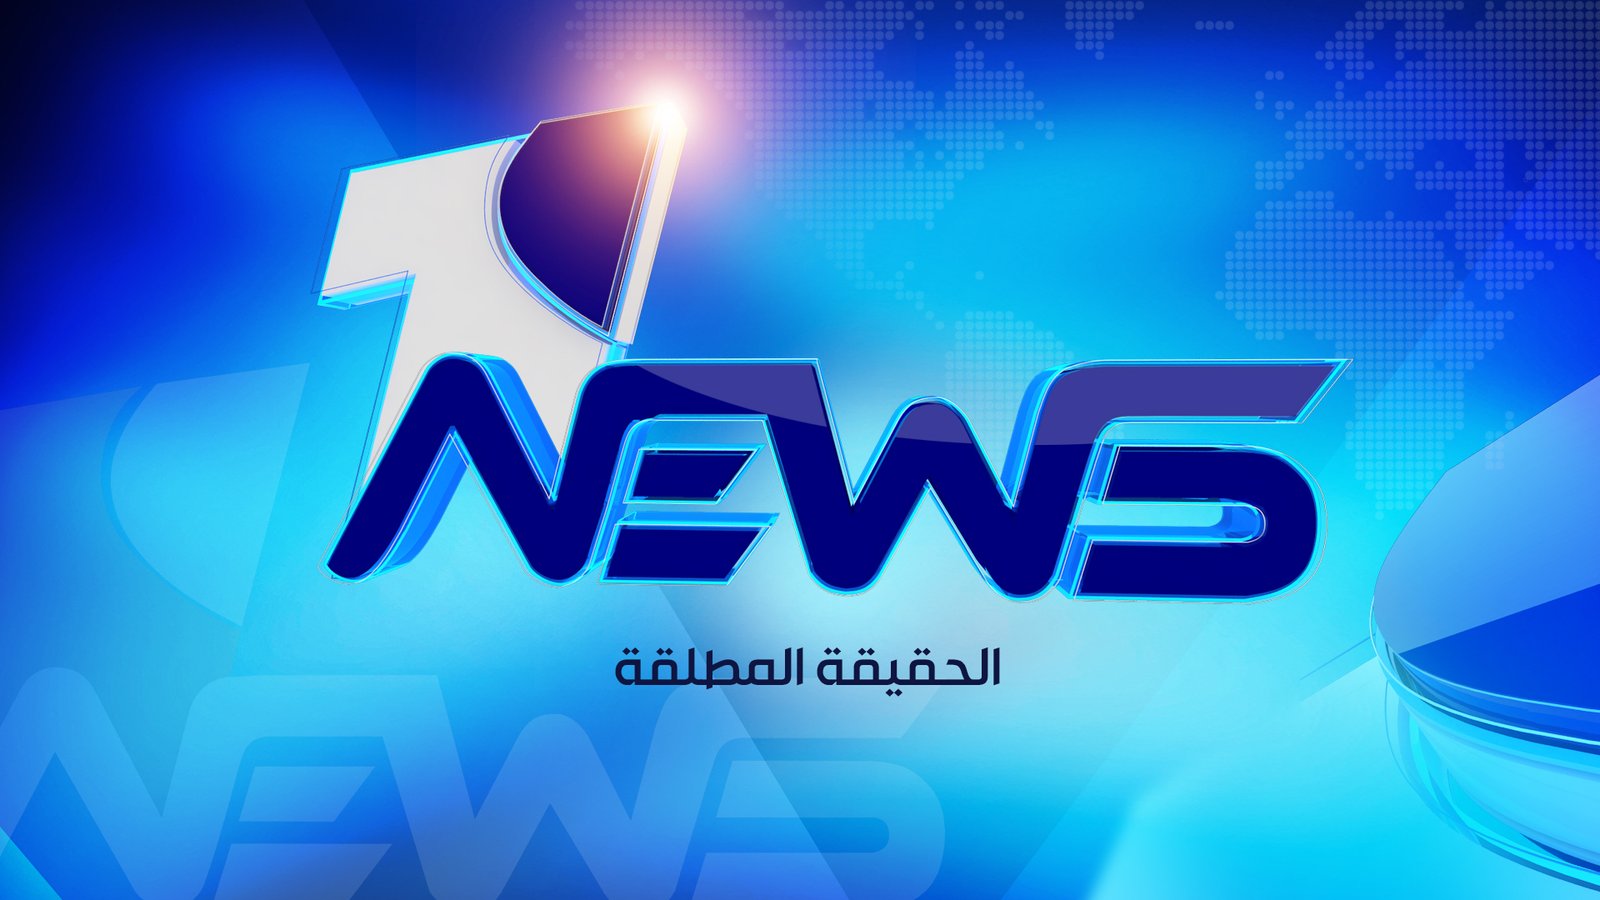 احمد العضاض لوان نيوز : استعداد قوى تشرين والتيار للخروج بتظاهرات يصعب على الإطار عقد الجلسات